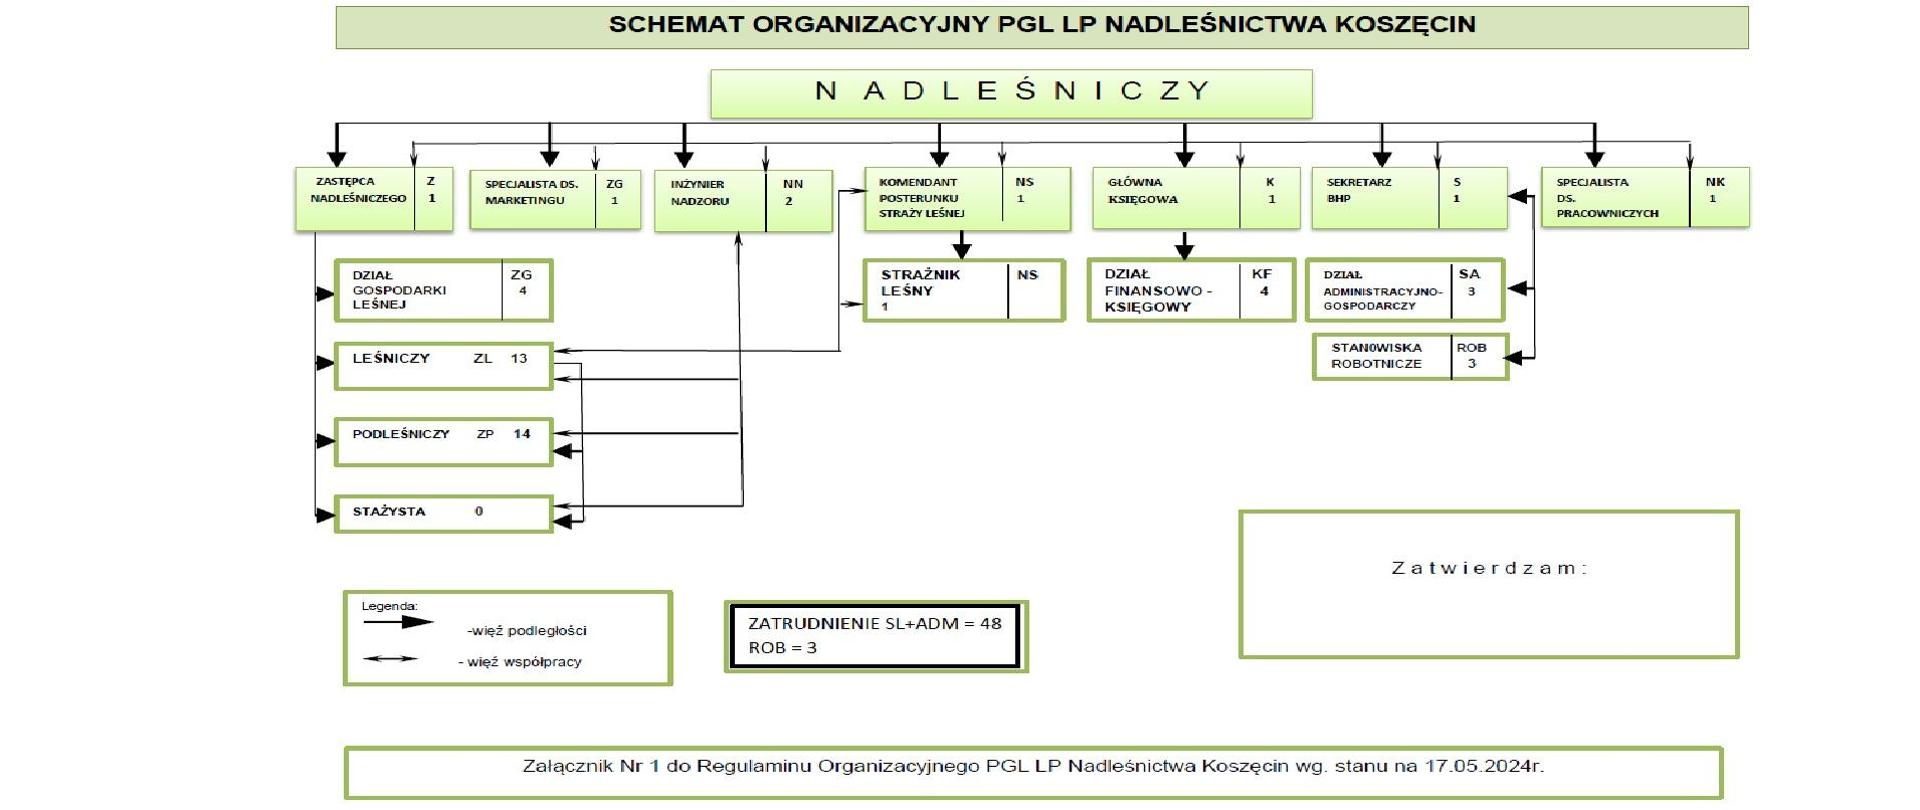 Schemat organizacyjny Nadleśnictwa Koszęcin